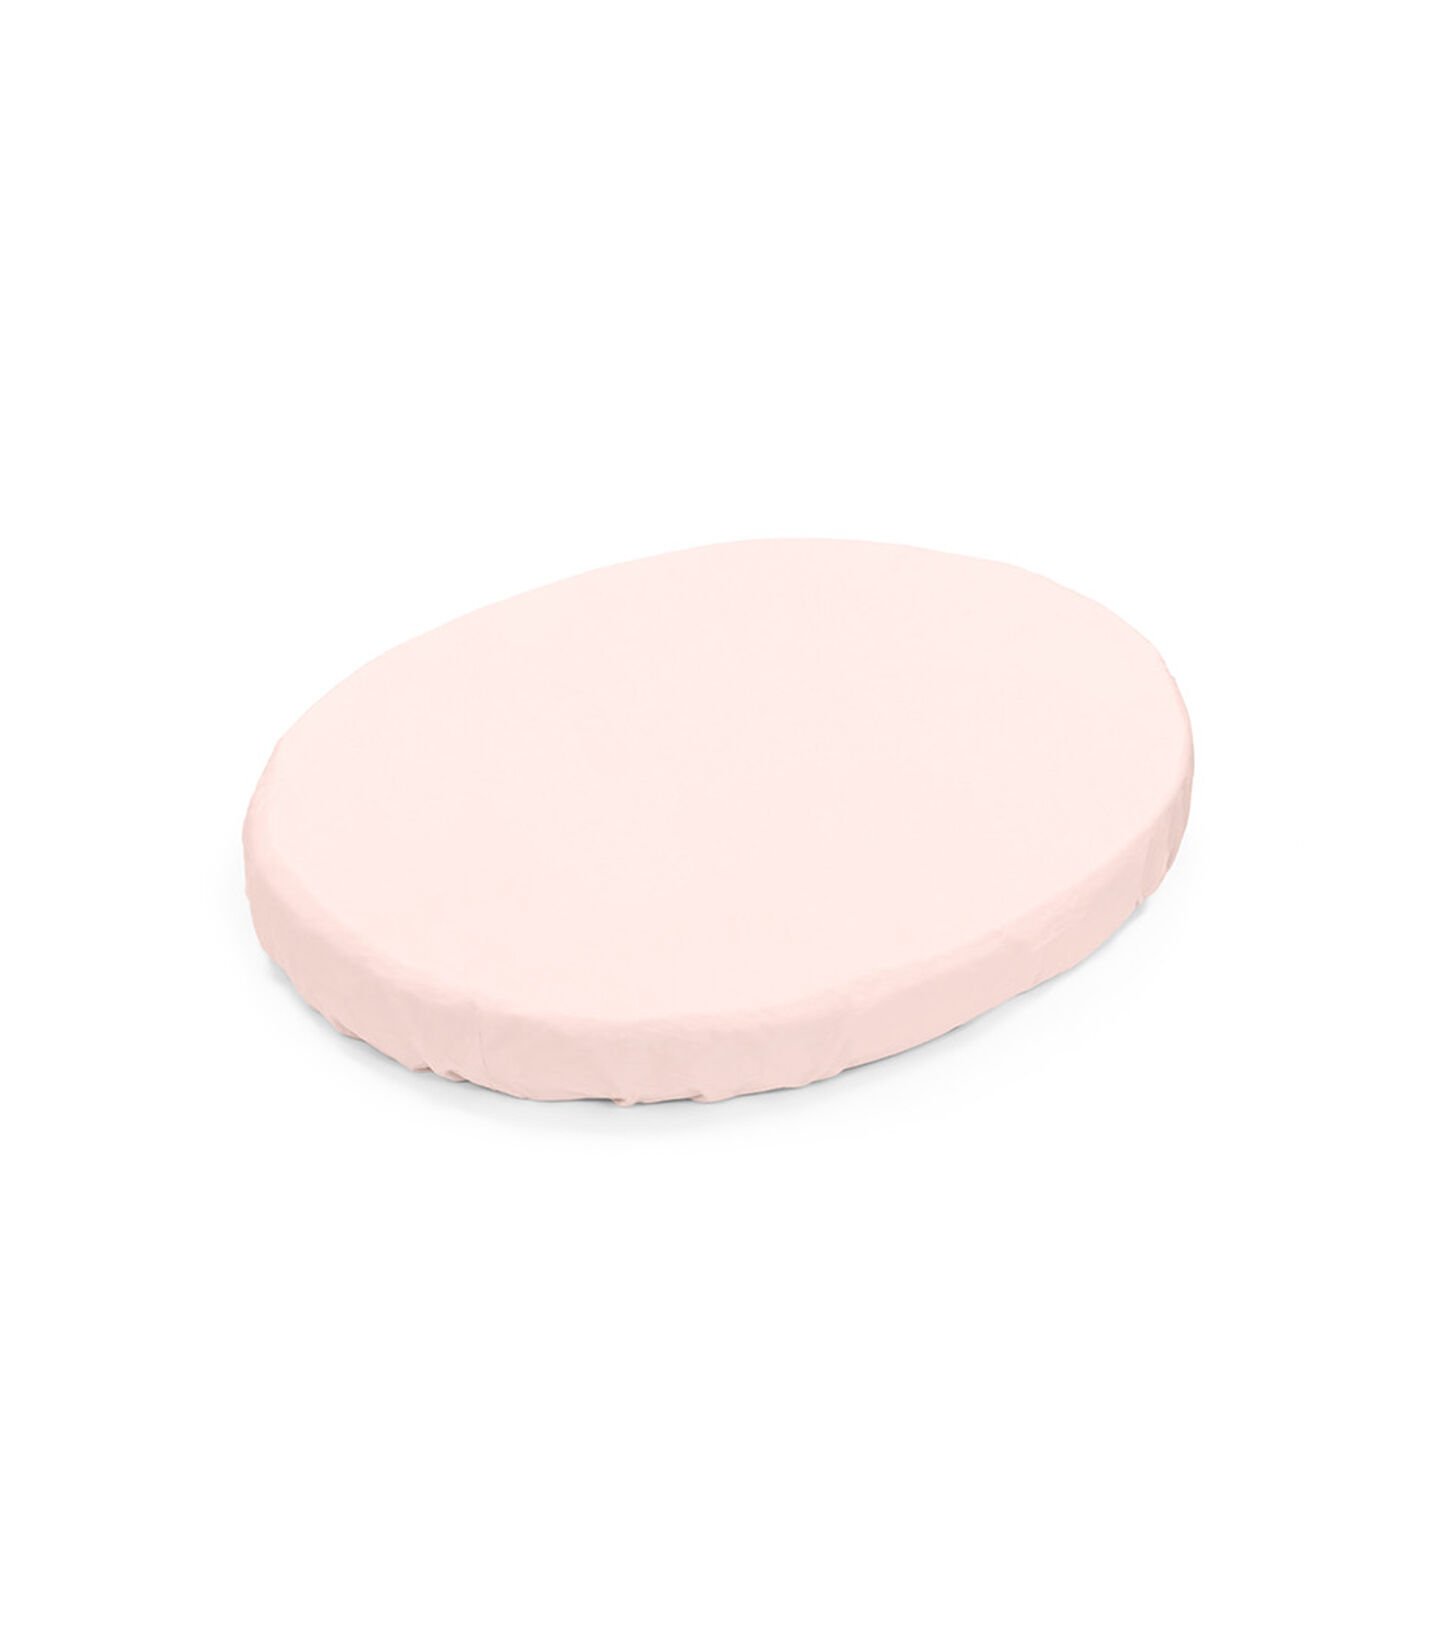 Lençol pequeno ajustável rosa pêssego Stokke® Sleepi™, Rosa pêssego, mainview view 1